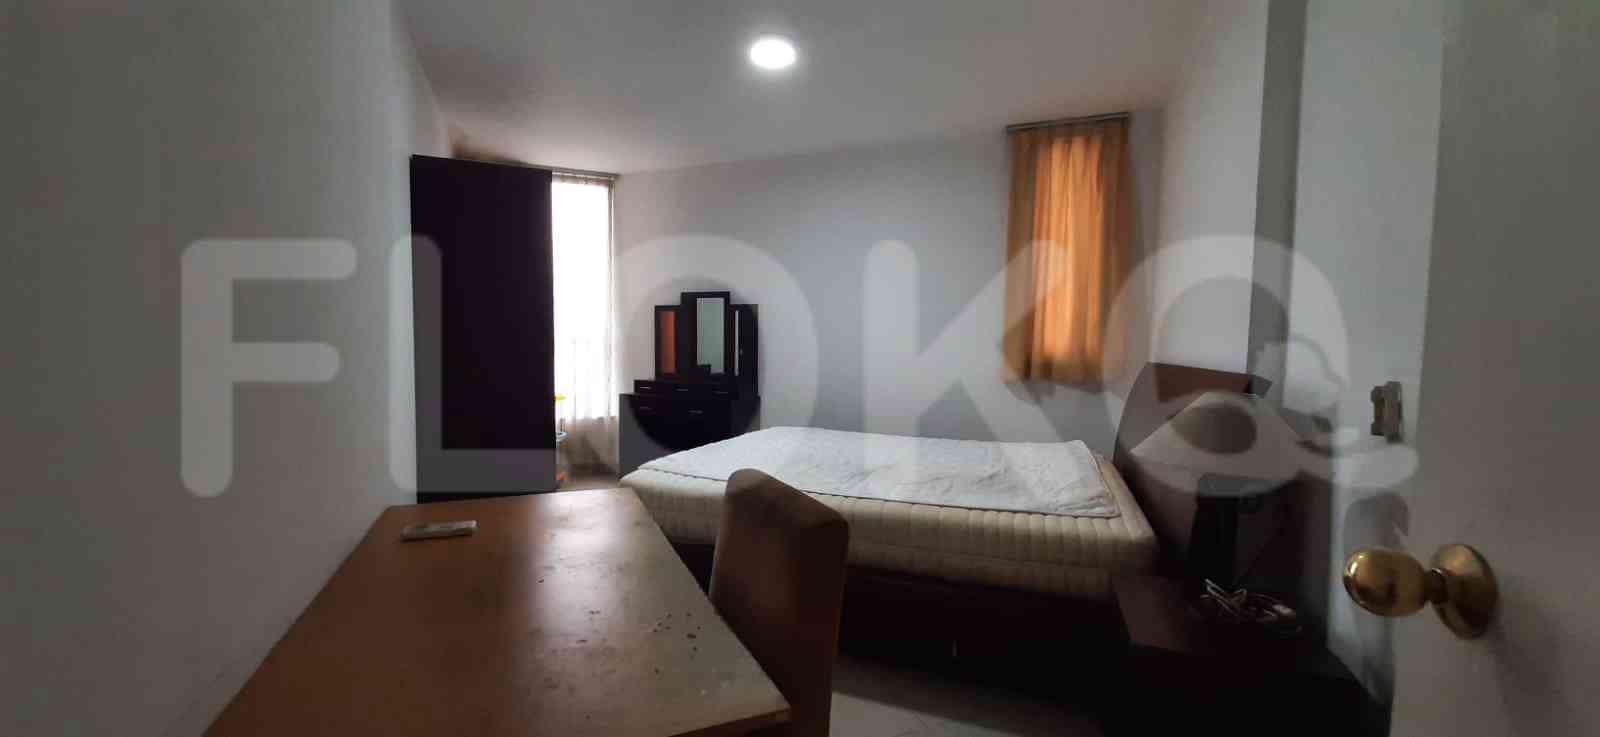 1 Bedroom on 16th Floor for Rent in Taman Rasuna Apartment - fku51d 1